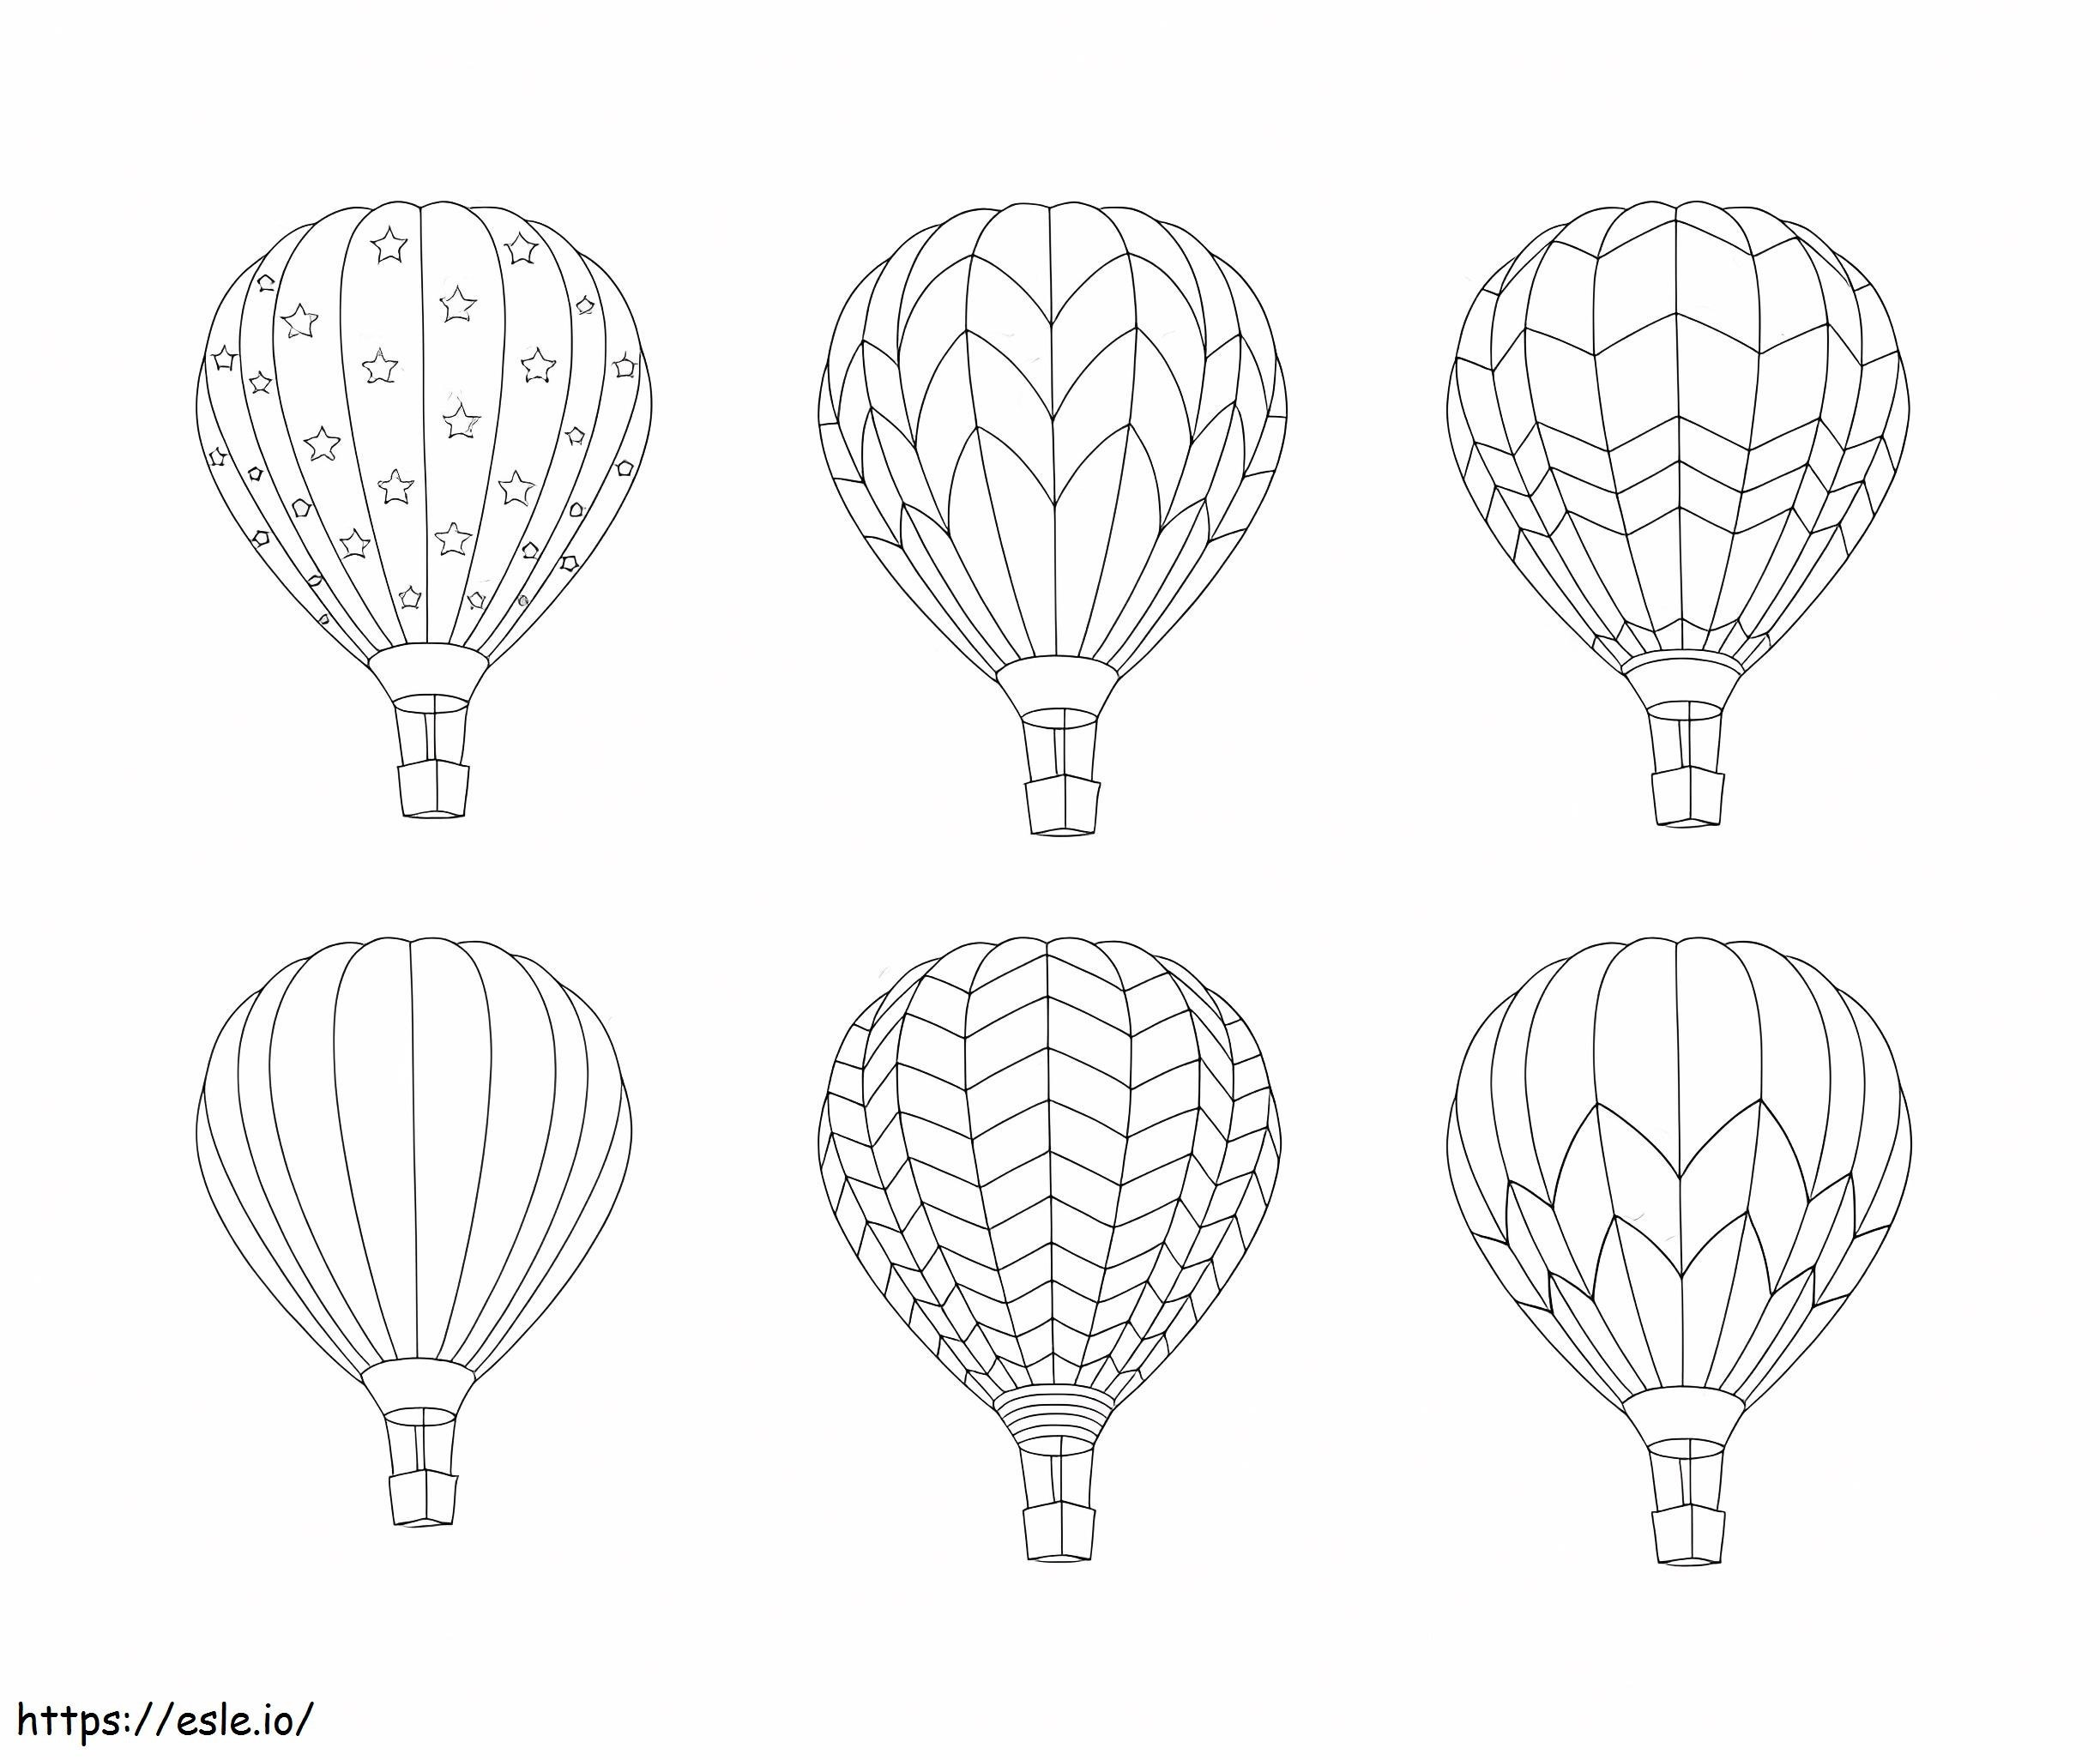 Sechs Heißluftballons ausmalbilder